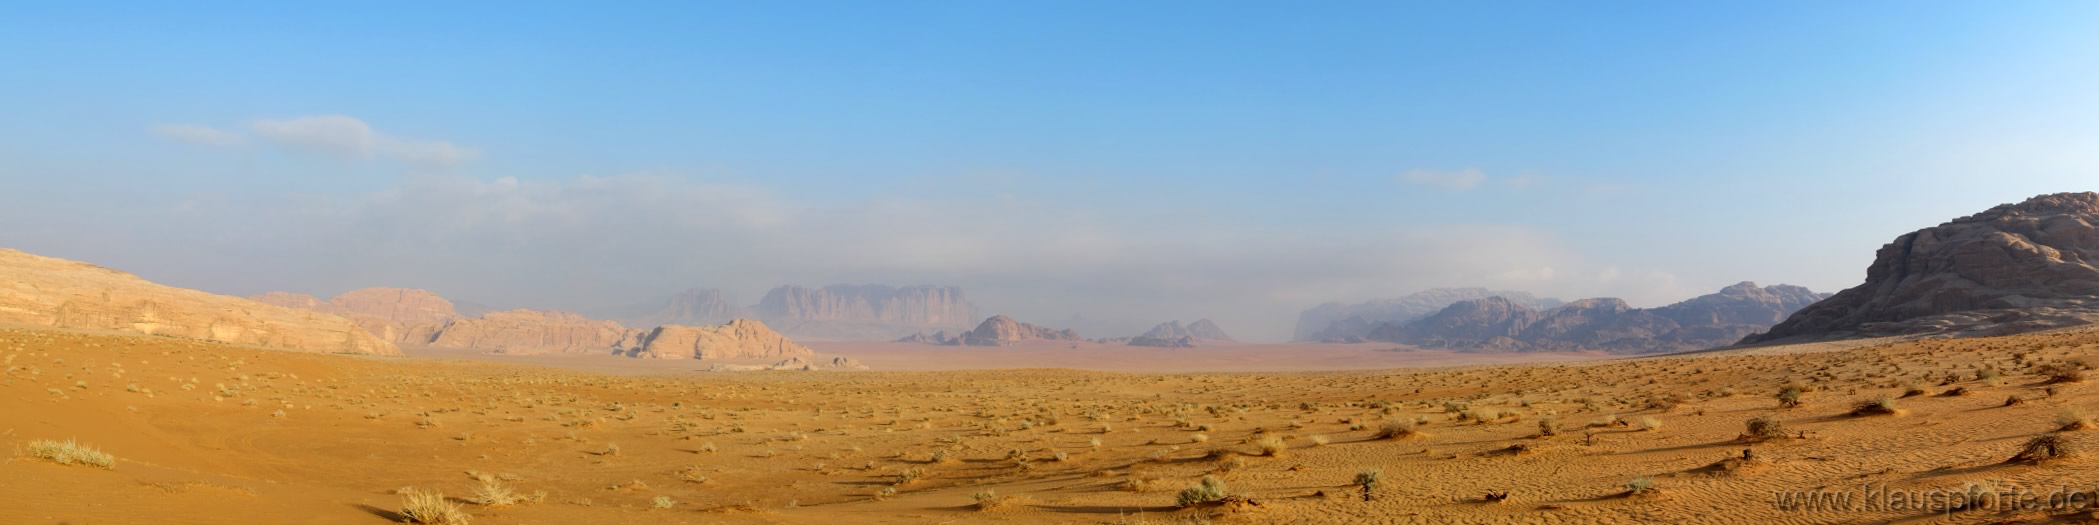 Ein letzter Blick auf die Wüste im Wadi Rum